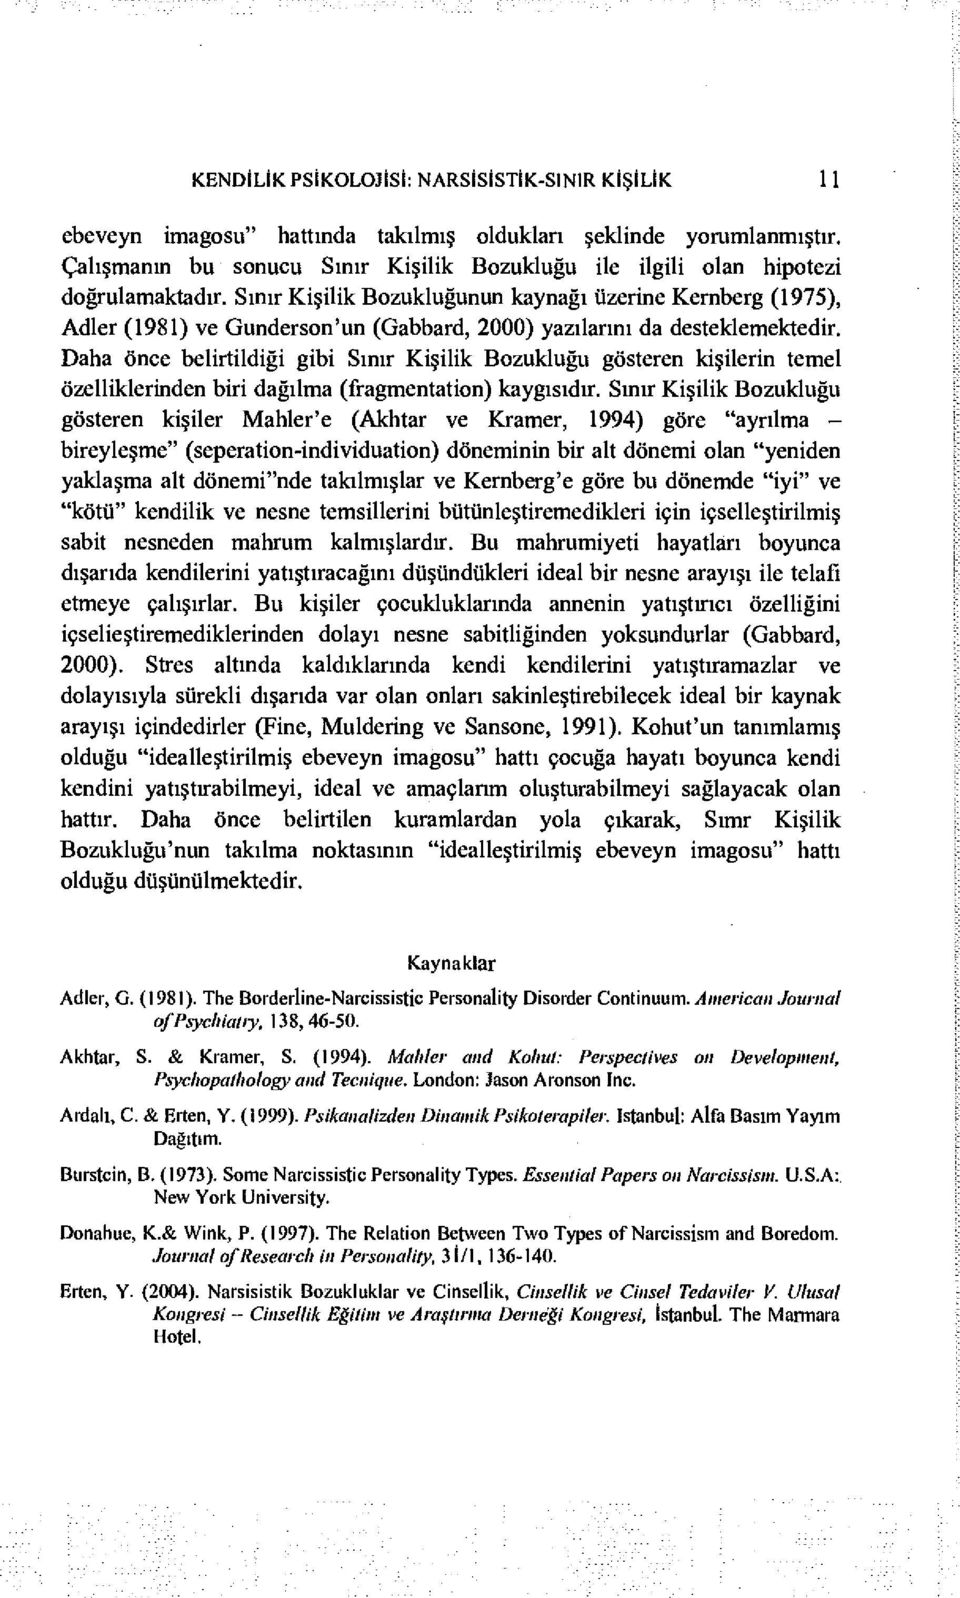 Sınır Kişilik Bozukluğunun kaynağı üzerine Kernberg (1975), Adler (1981) ve Gunderson'un (Gabbard, 2000) yazılarını da desteklemektedir.